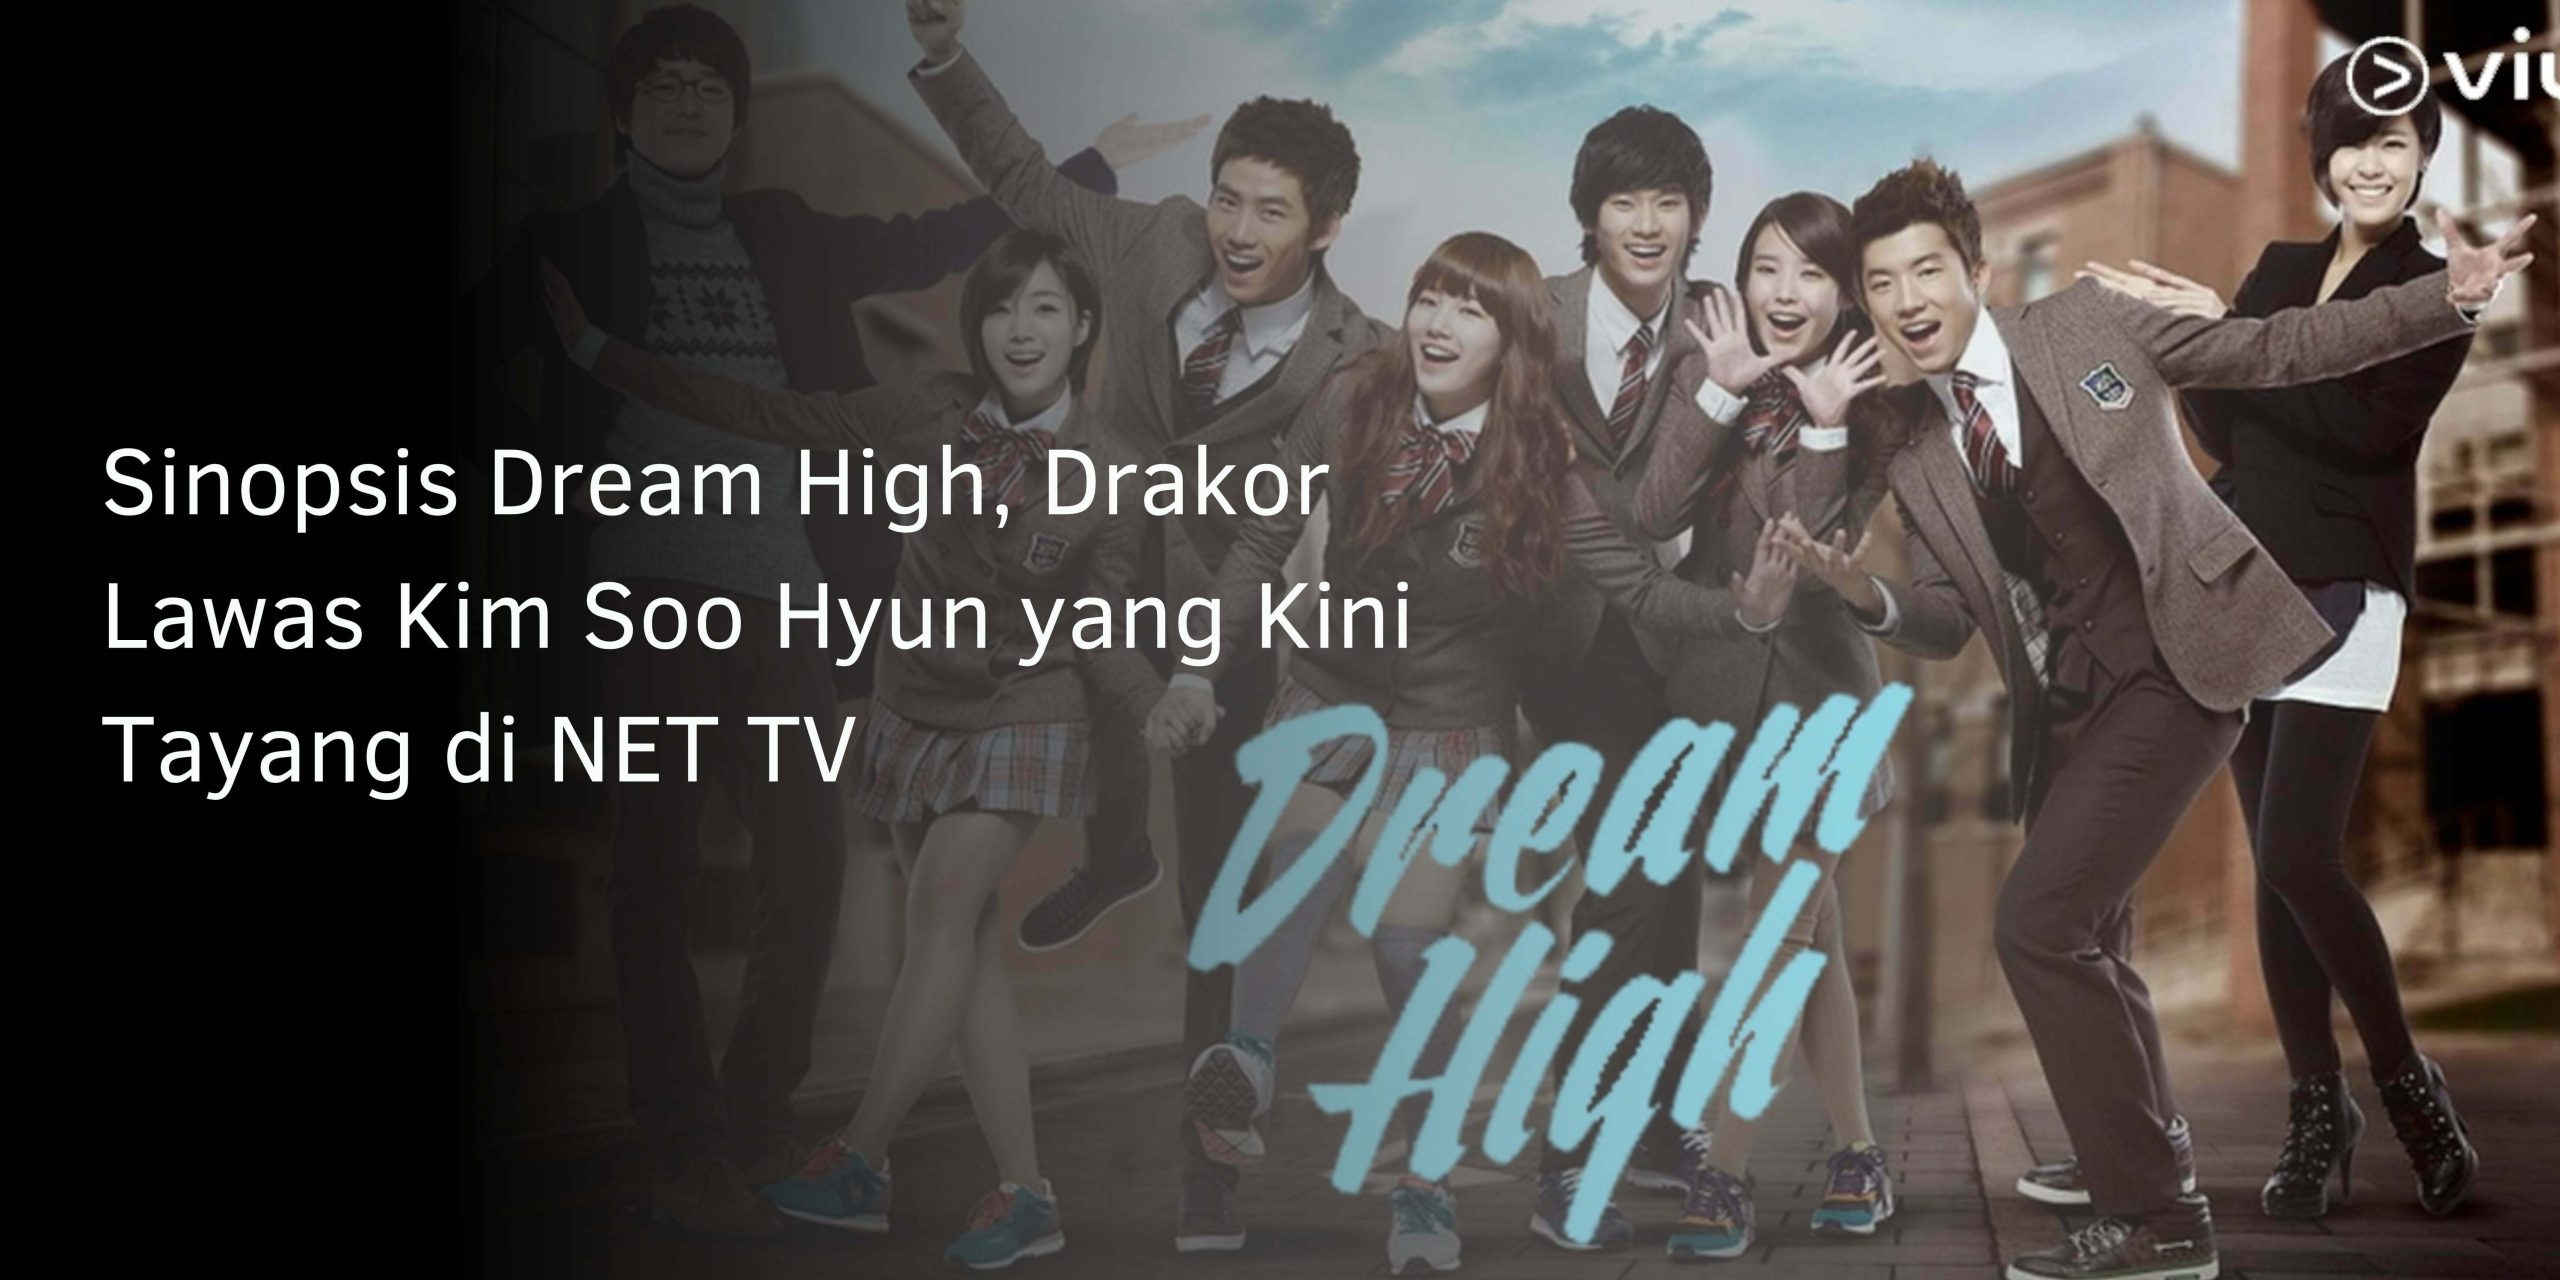 Sinopsis Drakor Dream High, Kini Tayang di NET TV